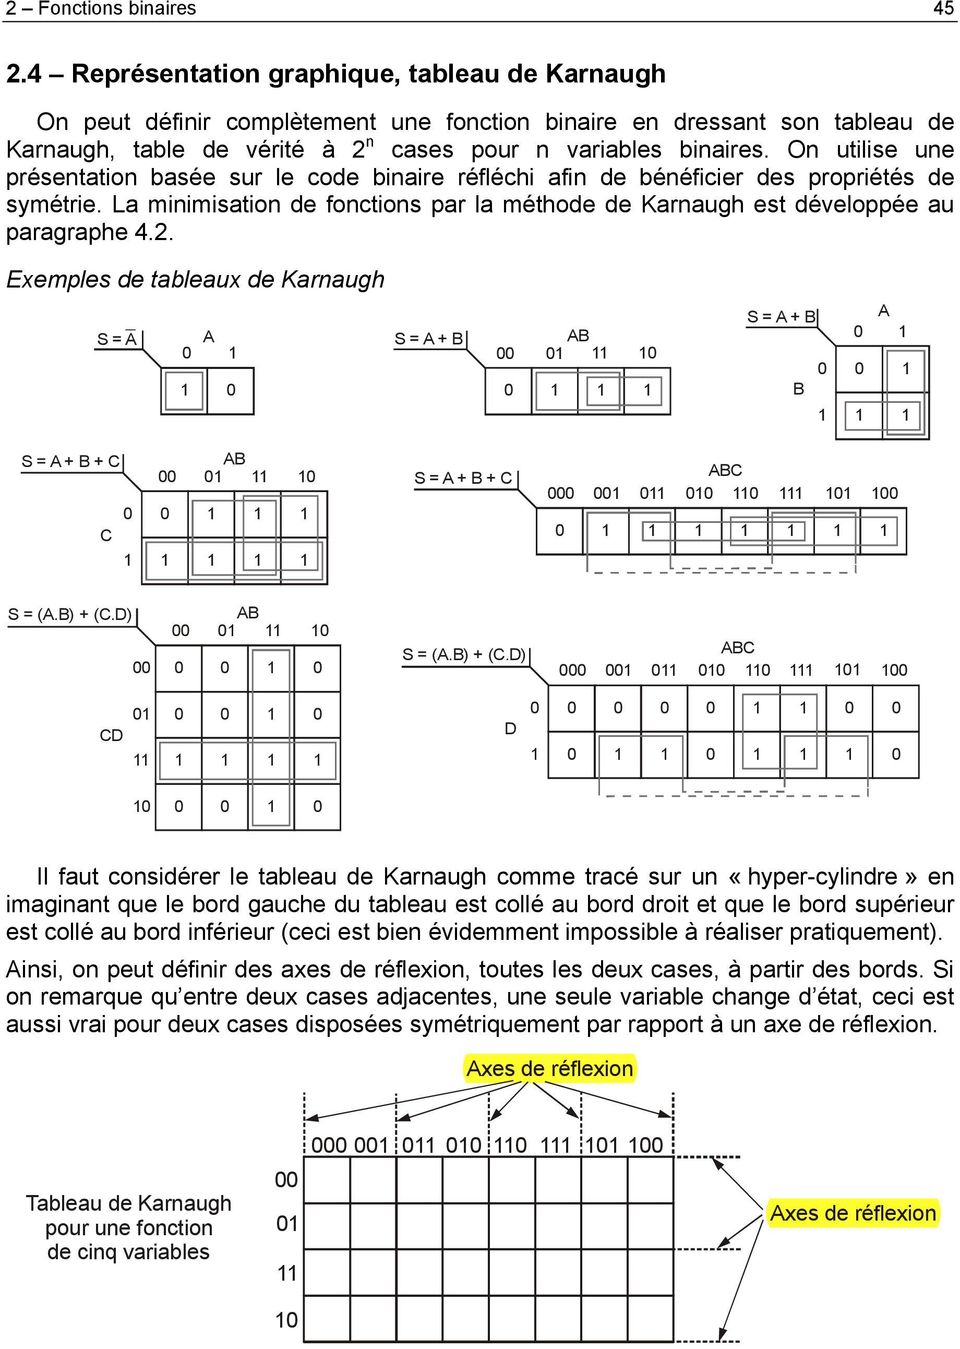 On utilise une présentation basée sur le code binaire réfléchi afin de bénéficier des propriétés de symétrie. La minimisation de fonctions par la méthode de Karnaugh est développée au paragraphe 4.2.